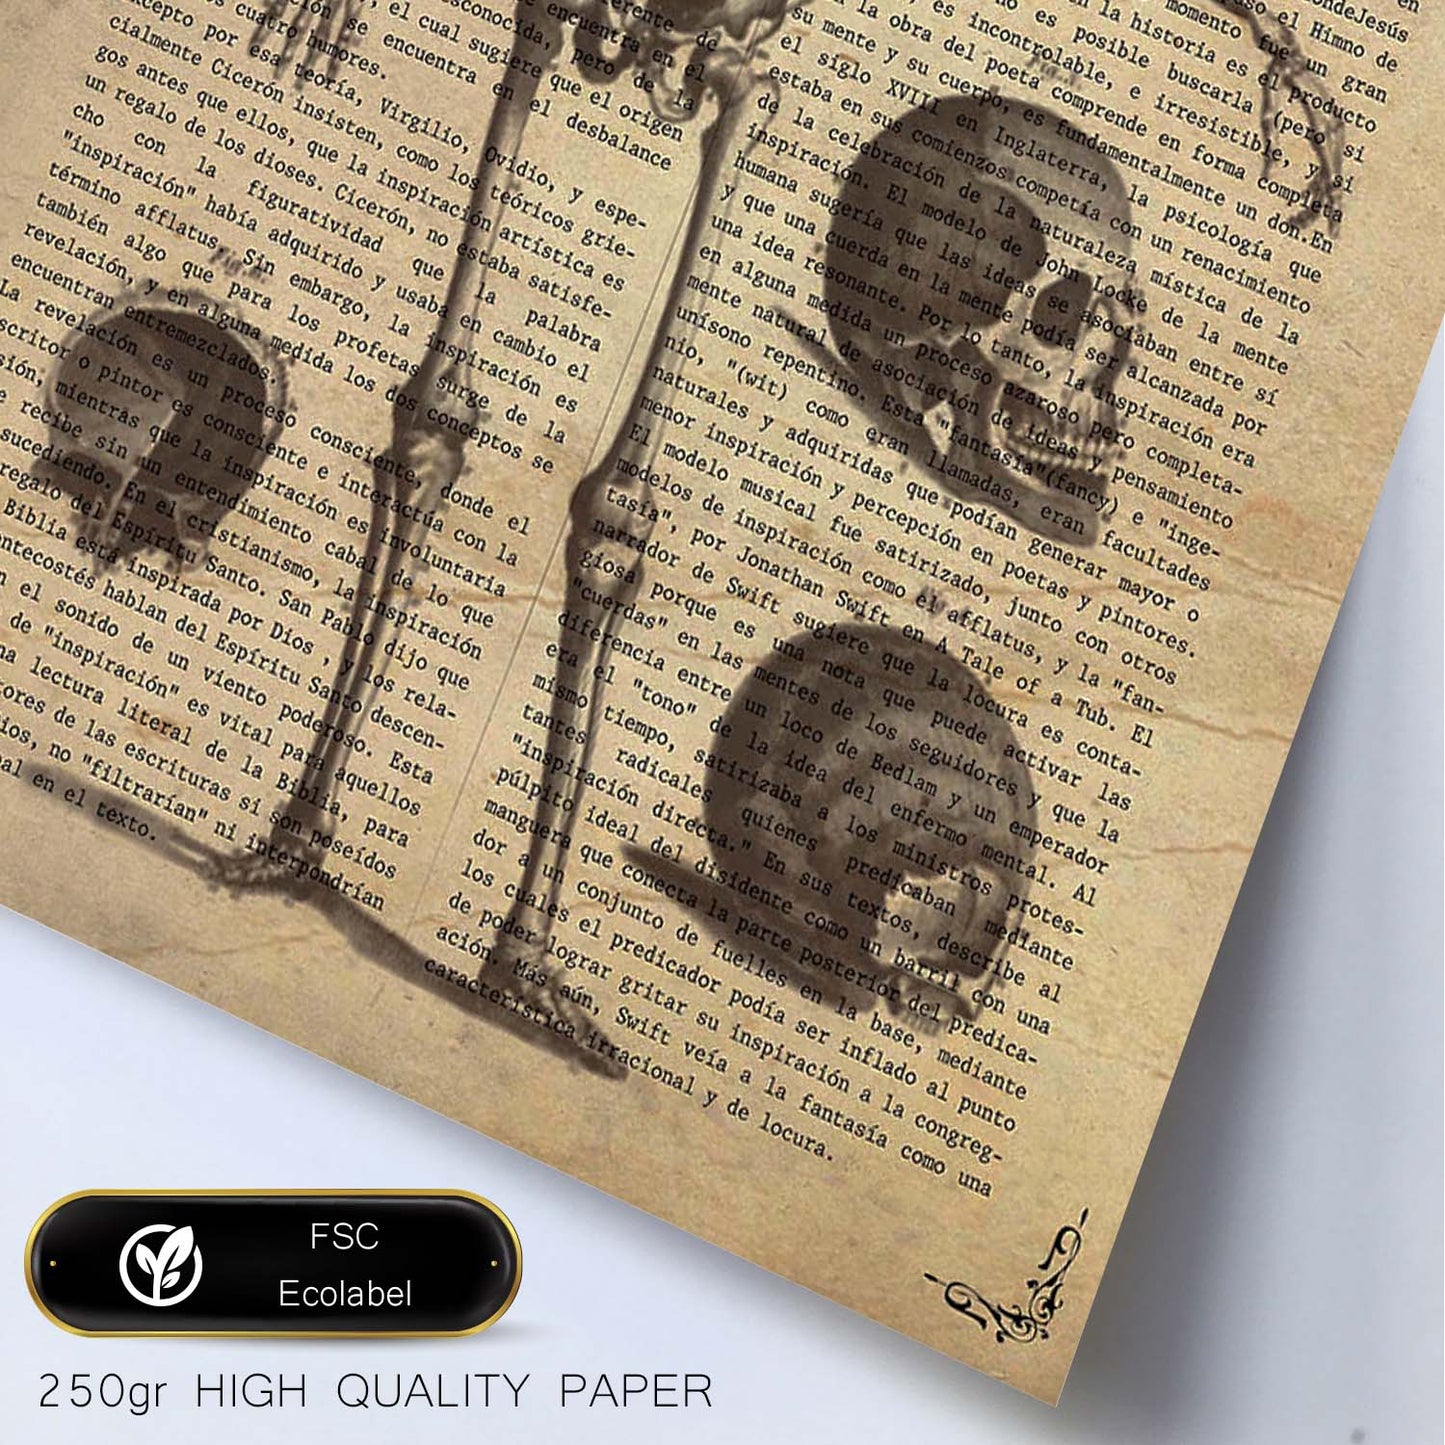 Poster de Esqueleto y partes. Láminas de calaveras. Decoración de hogar.-Artwork-Nacnic-Nacnic Estudio SL